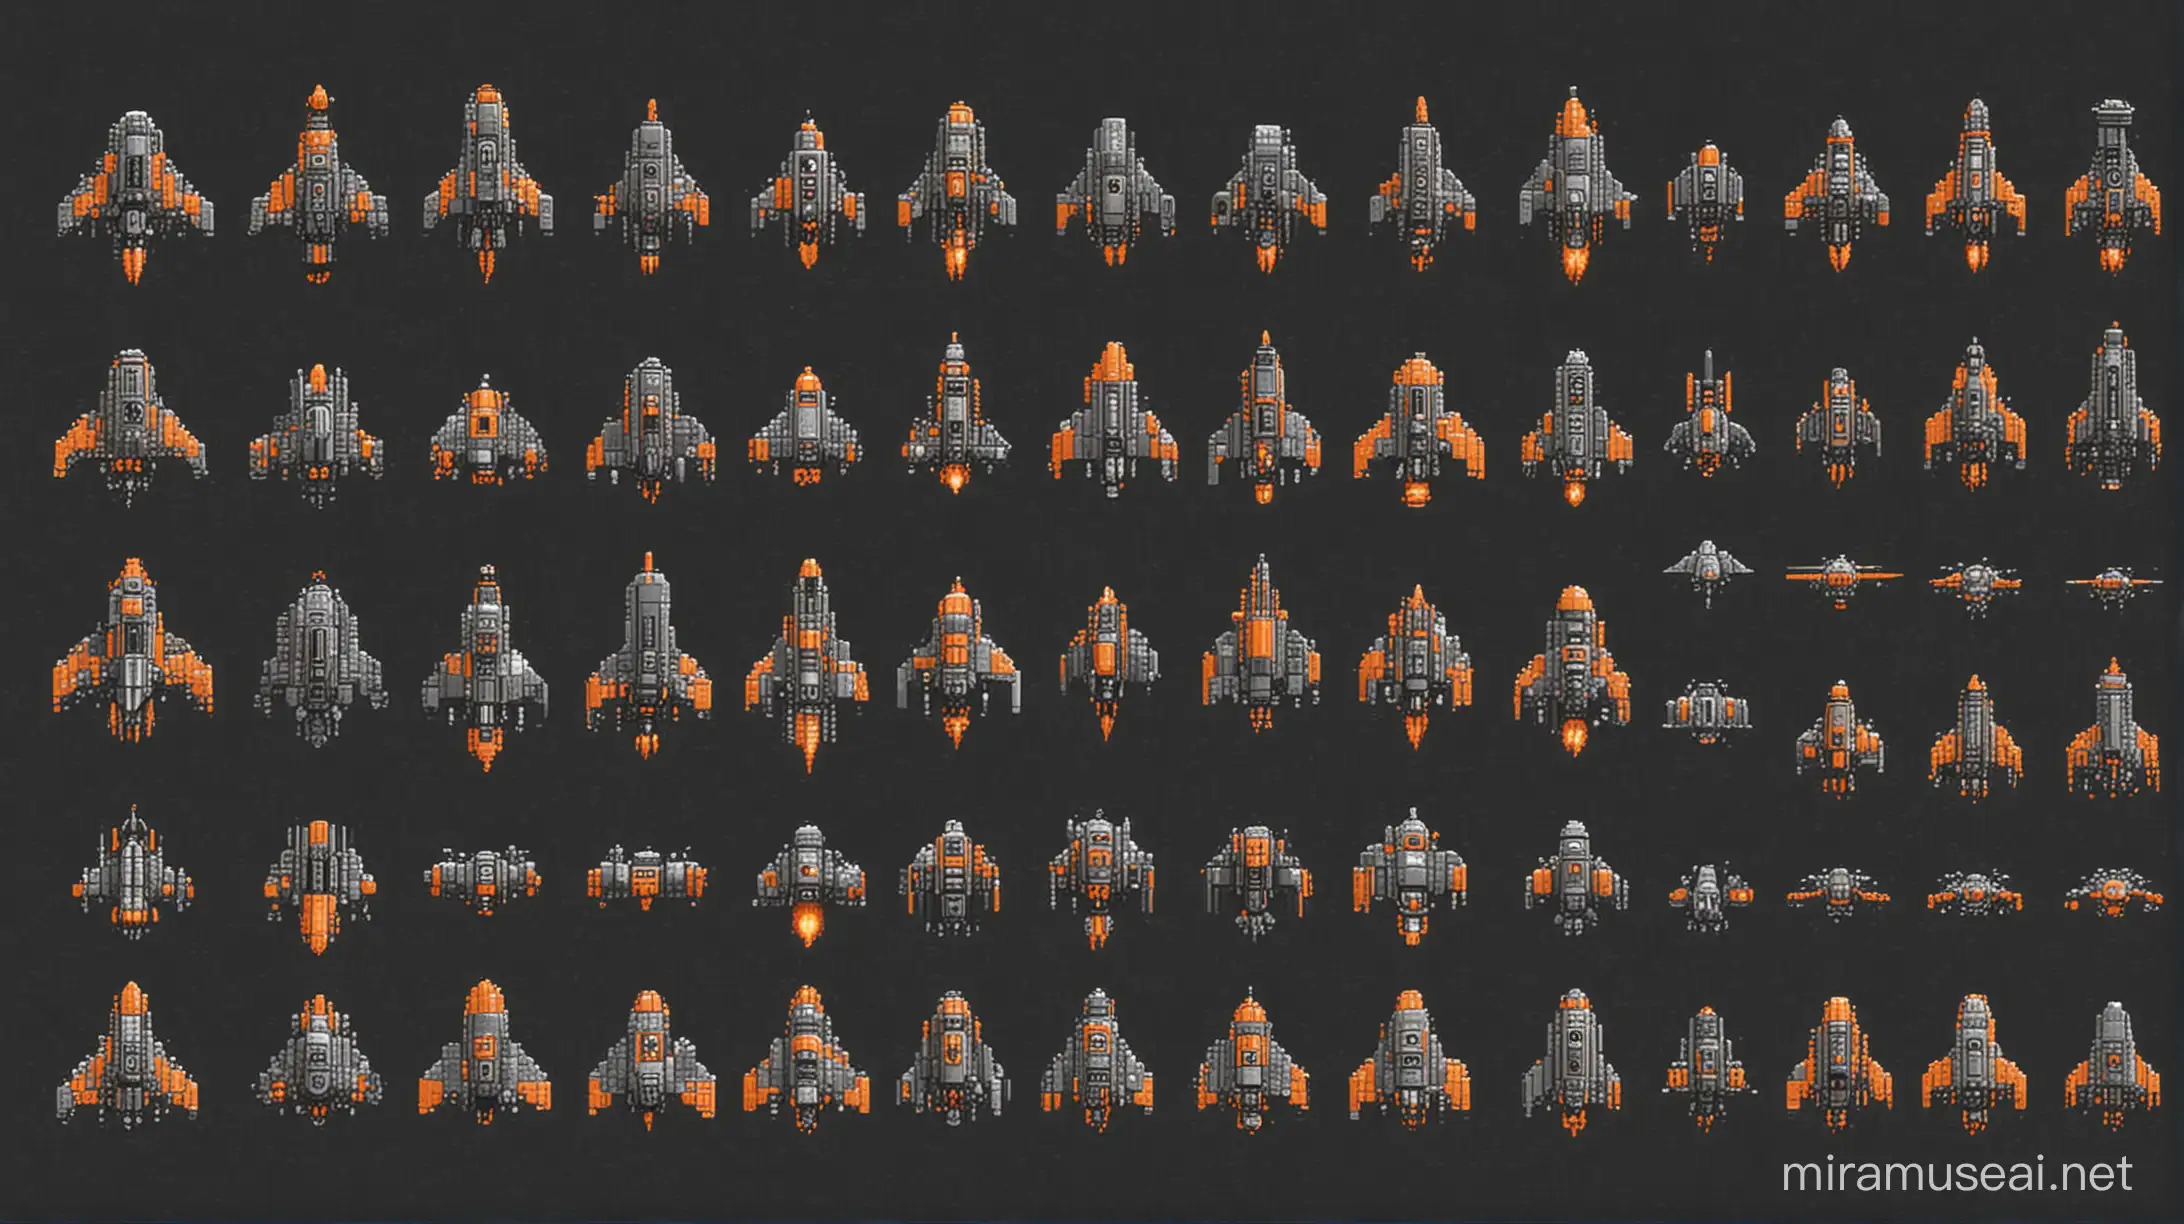 Pixel Art Spacecraft Wars Orange and Dark Gray Galactic Combat